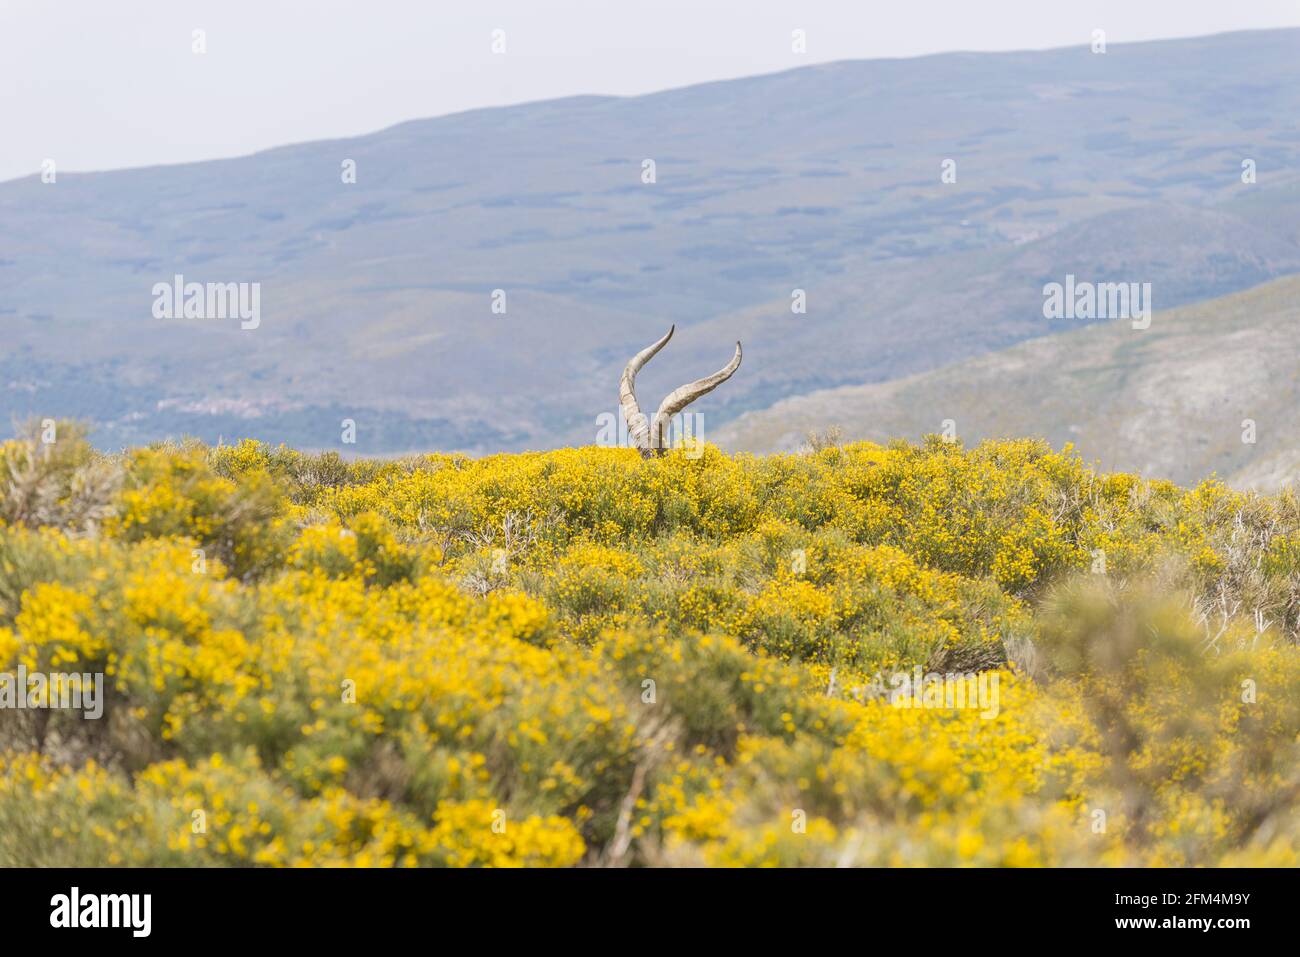 Corna grandi di una capra di montagna in piedi nel giallo campo con piante lunghe in fiore Foto Stock